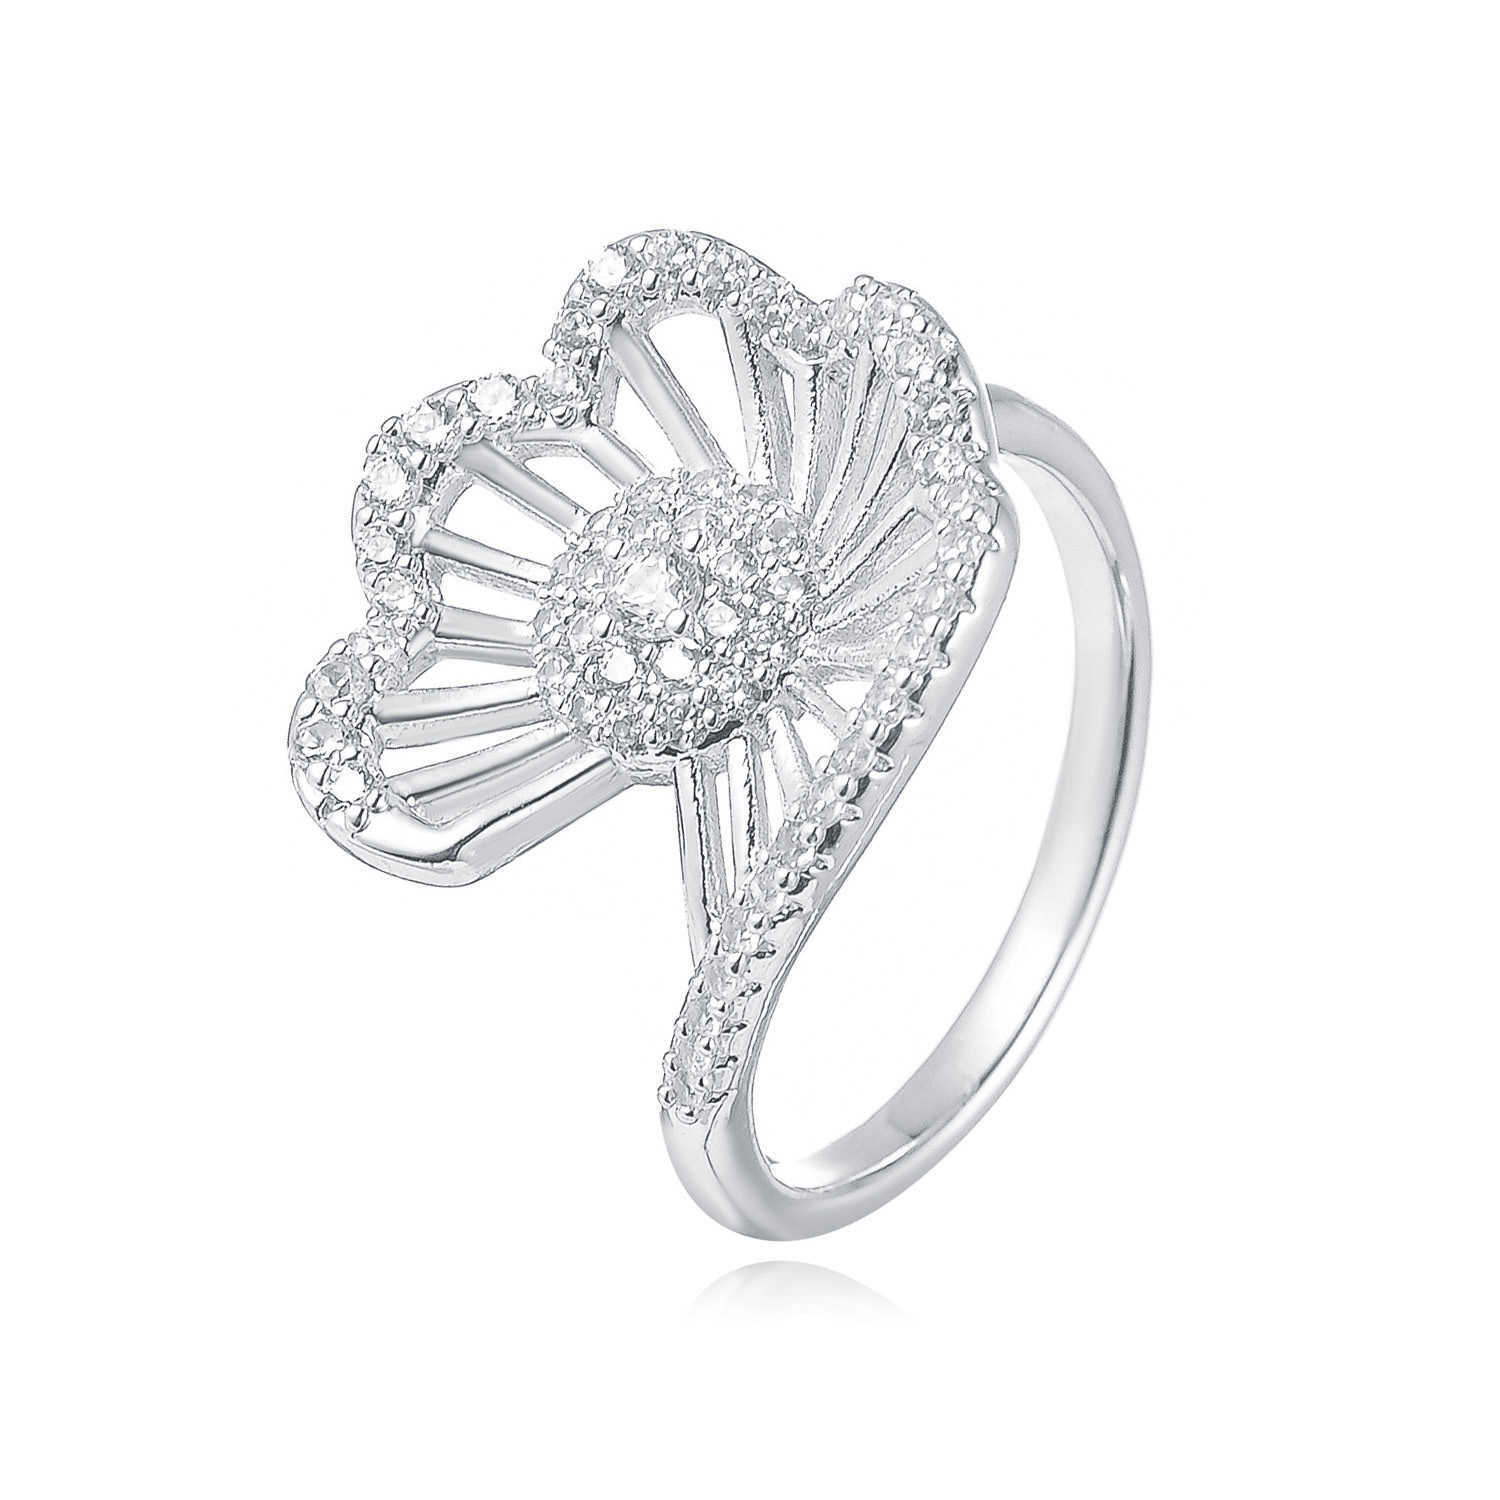 Küme halkaları klasik yüksek kaliteli moda mücevher azınlık moda hediye parti yüzüğü kadınlar için özel olarak tasarlanmış G230228